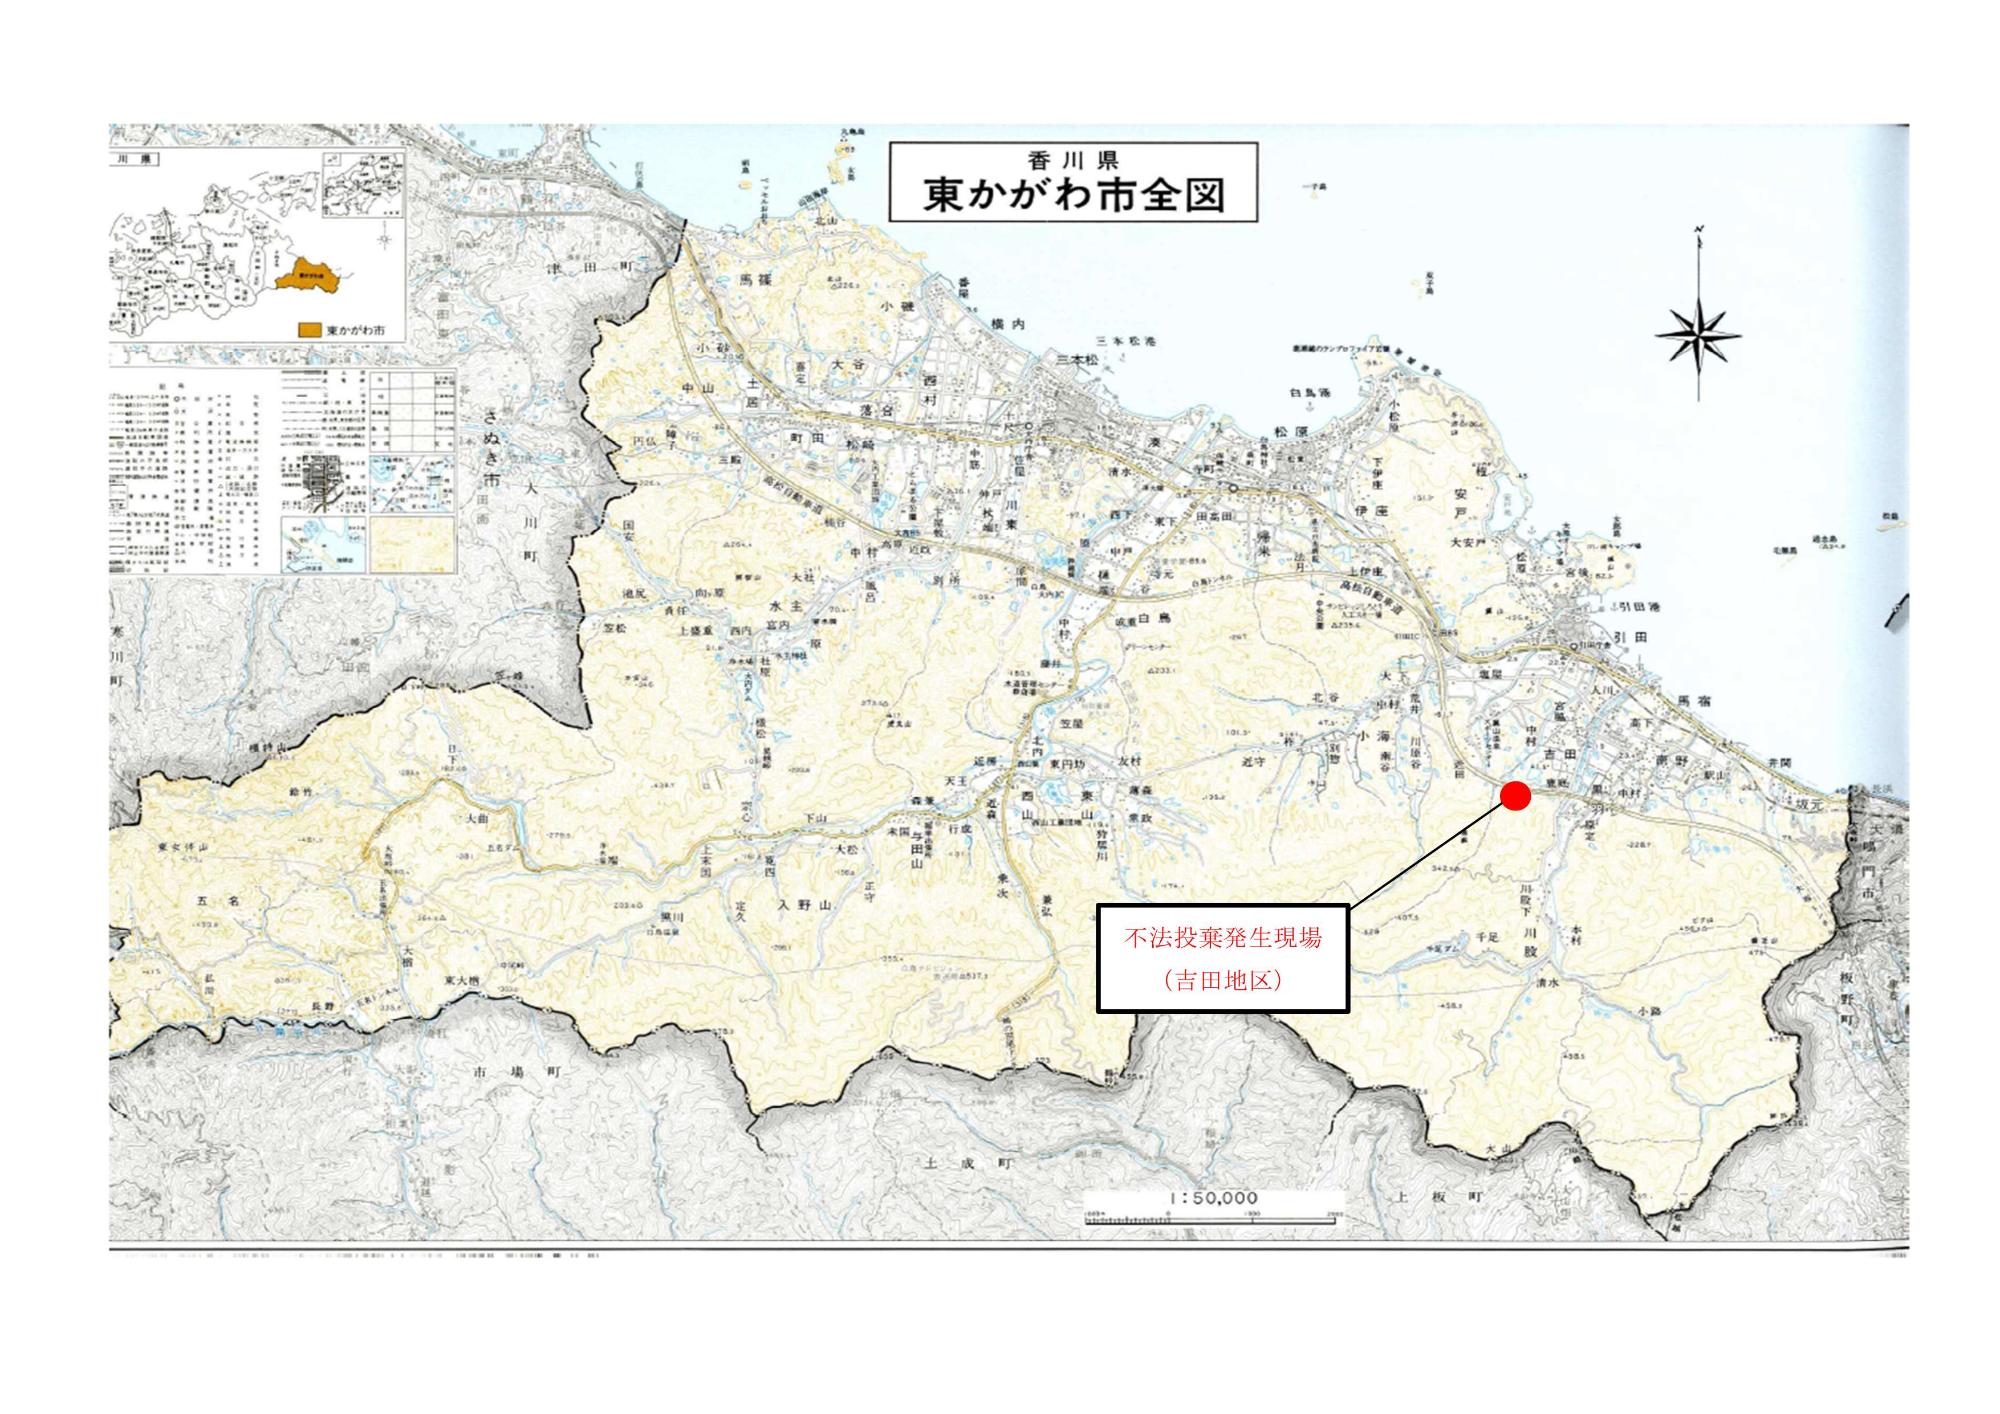 吉田地区の道に赤丸がついた発生現場を示す地図の画像